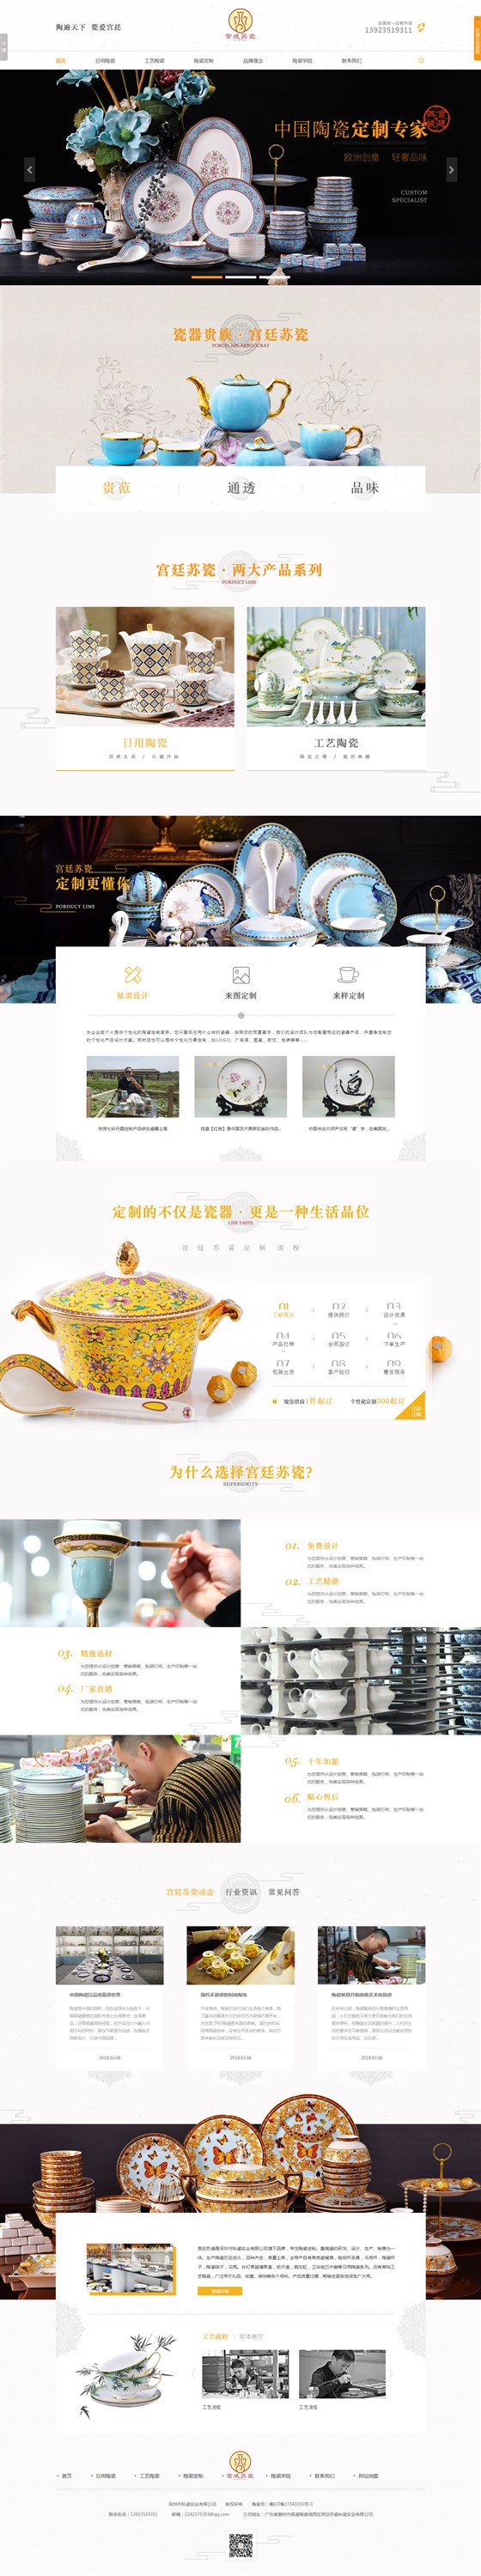 宫廷苏瓷营销型网站案例-追马网